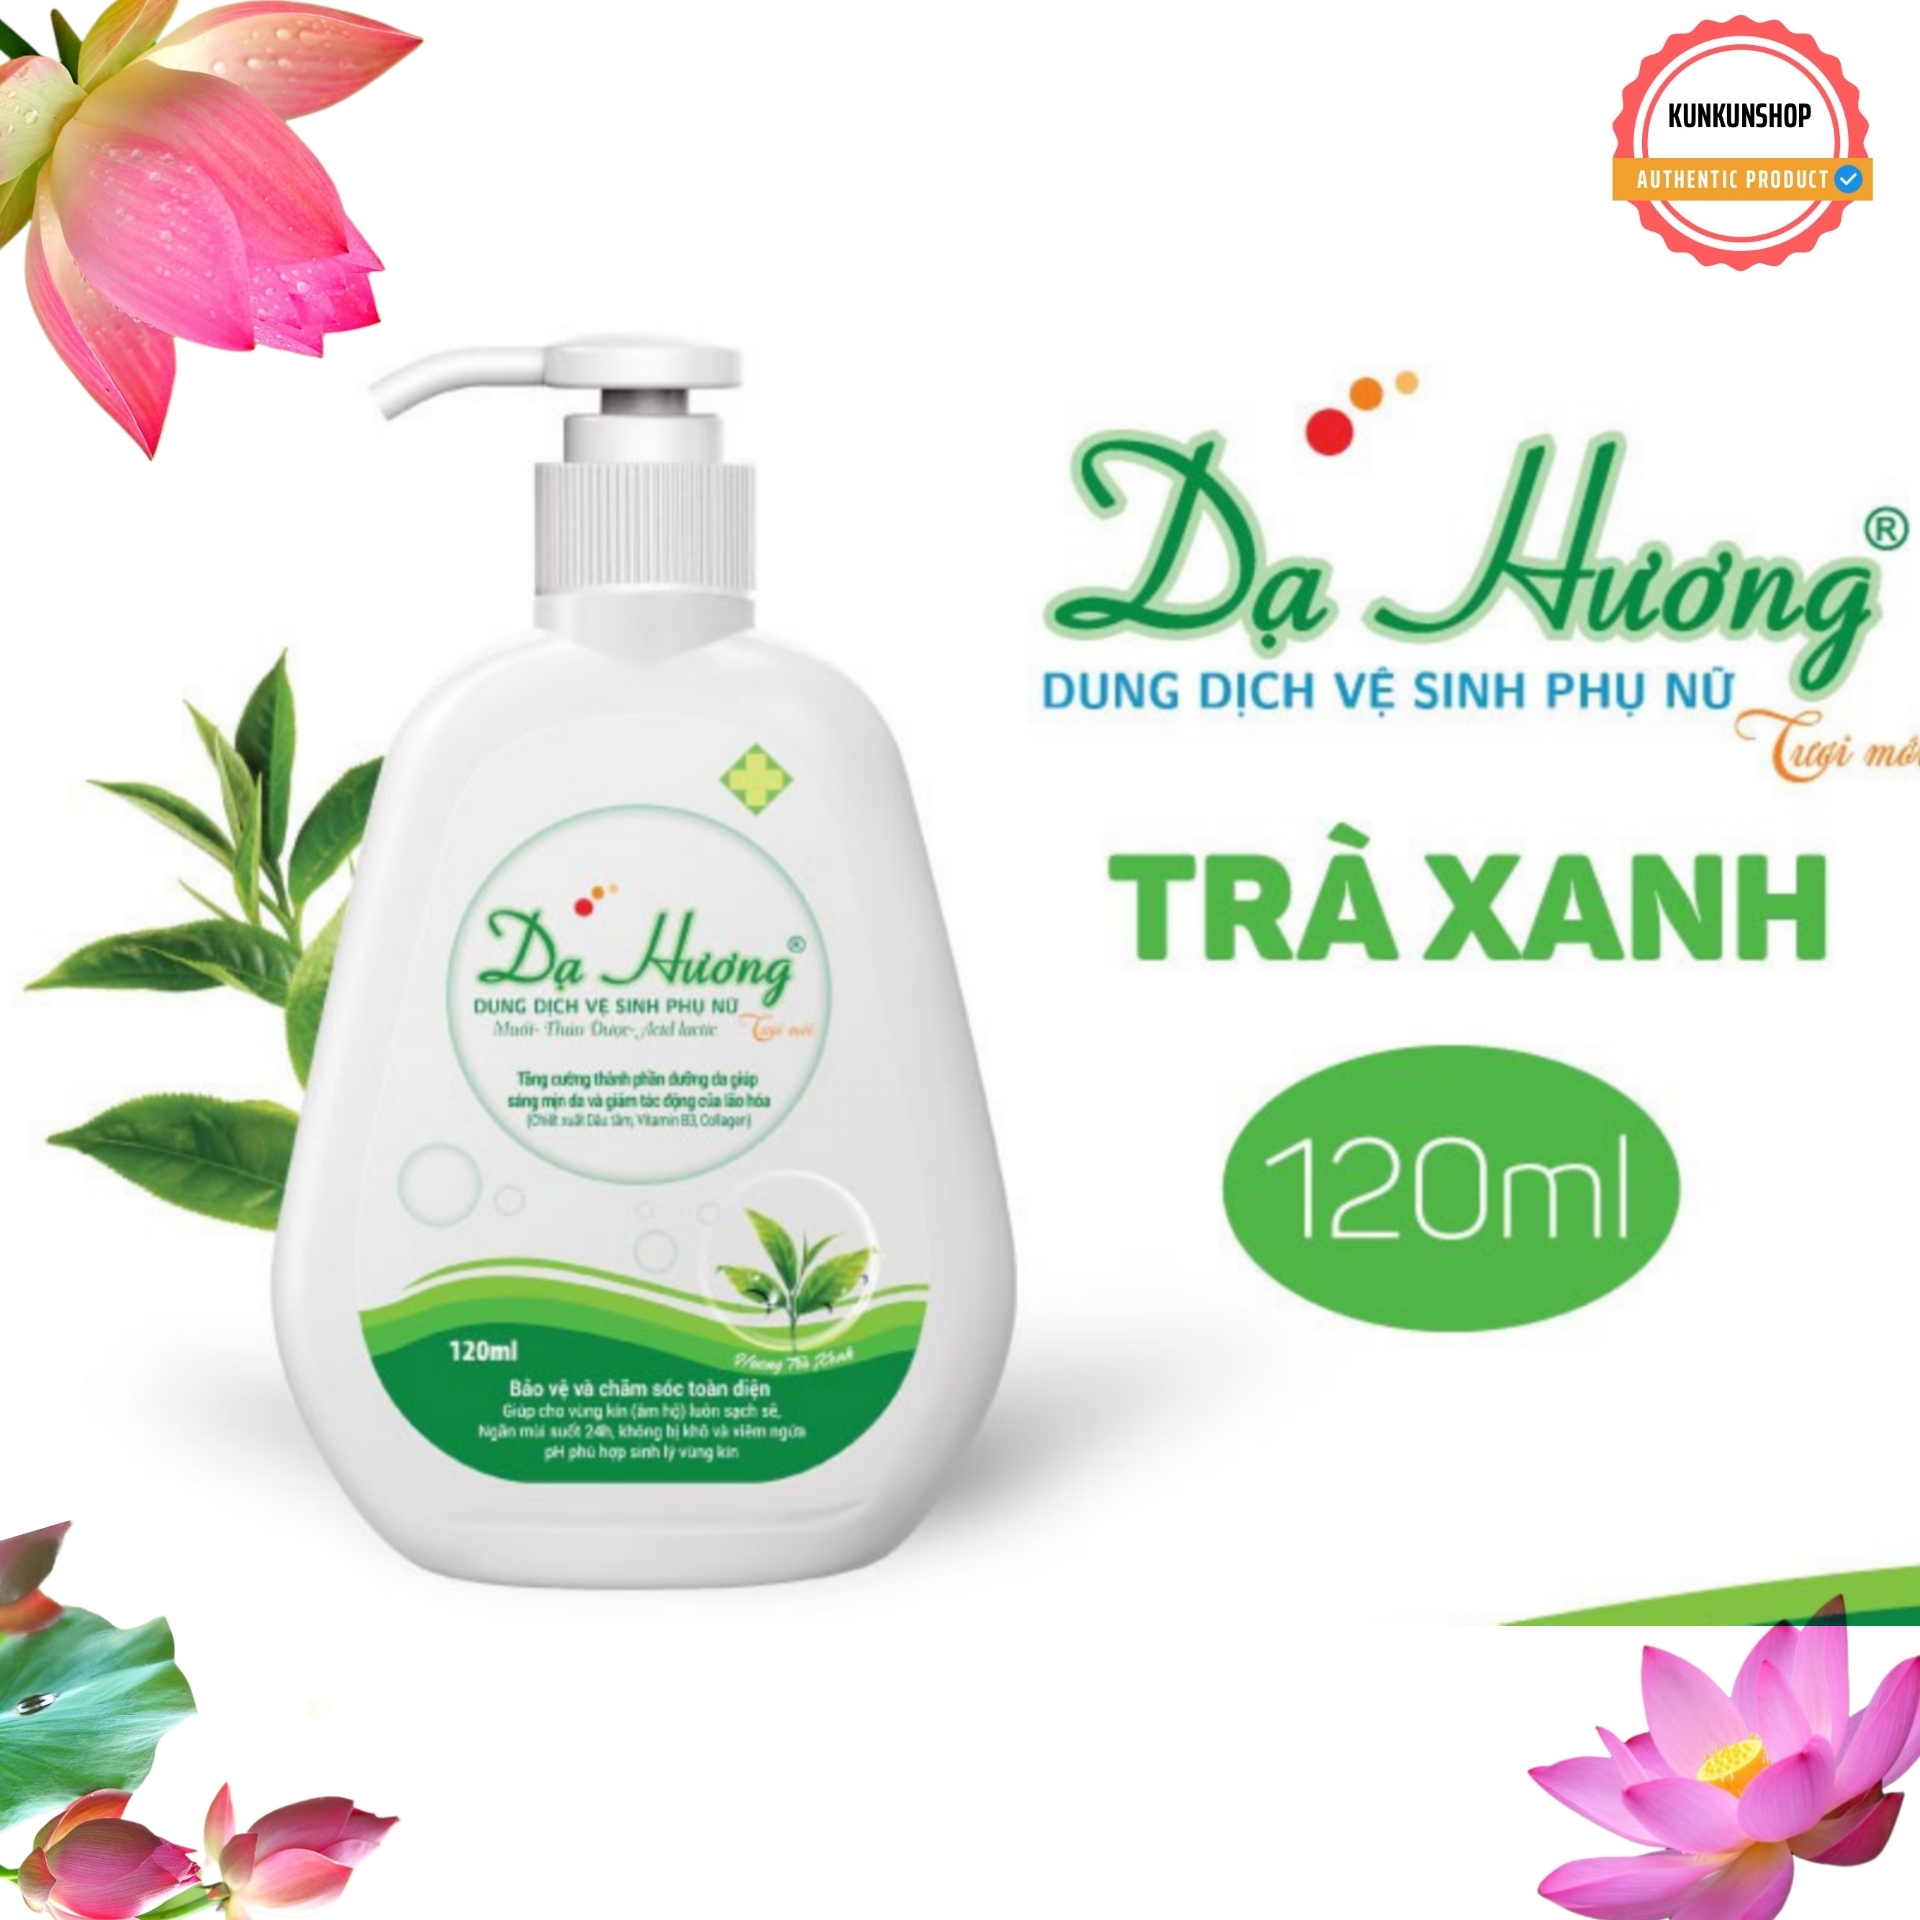 HCM SALE KHỦNG Dung dịch vệ sinh cô gái Dạ Hương Trà xanh 120ml